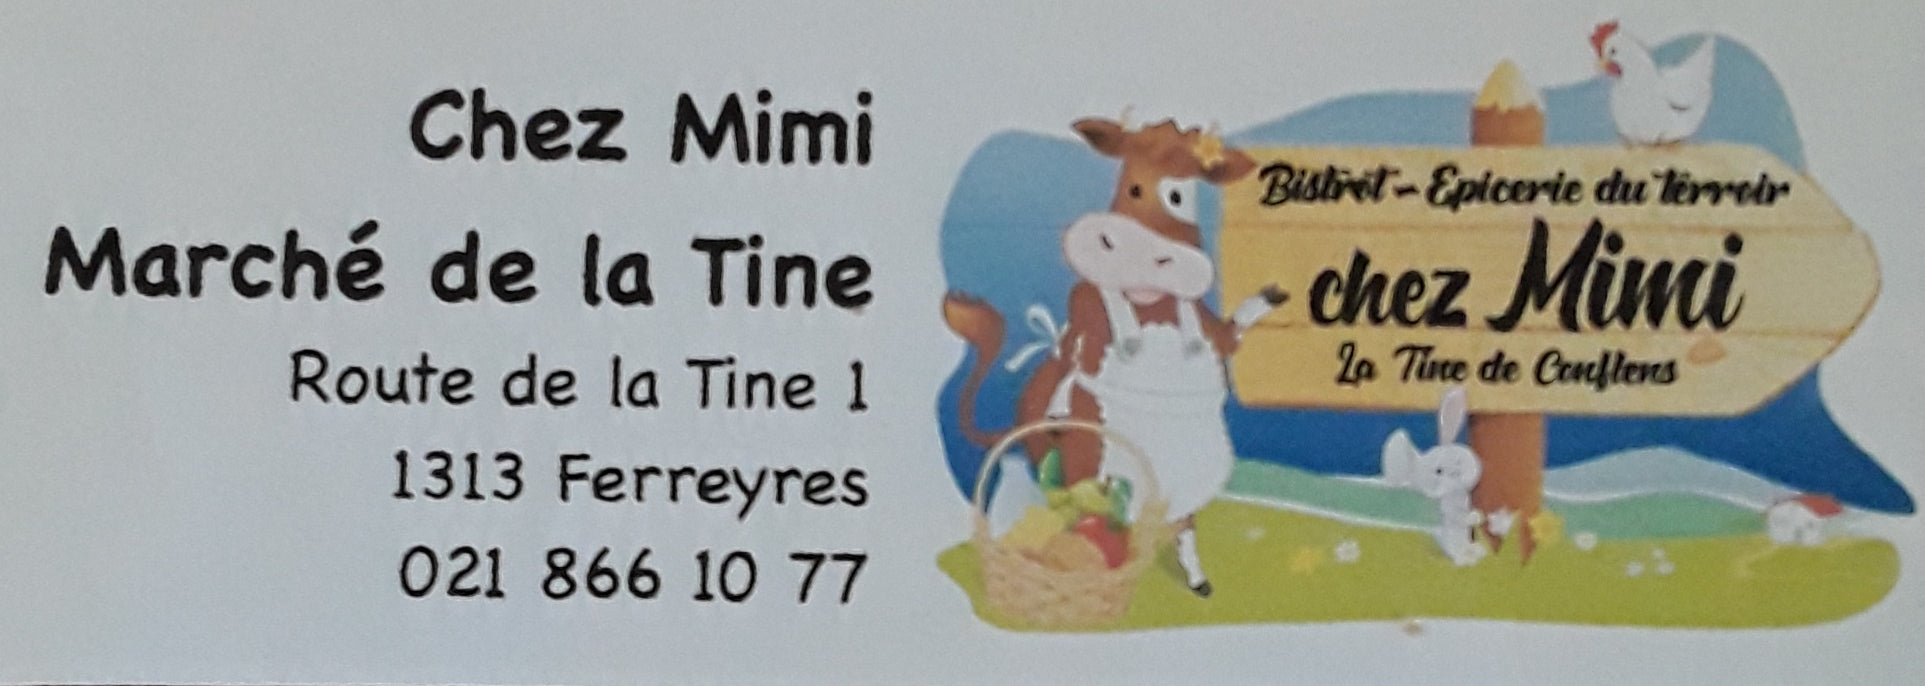 Marché/bistrot de la Tine "chez Mimi"